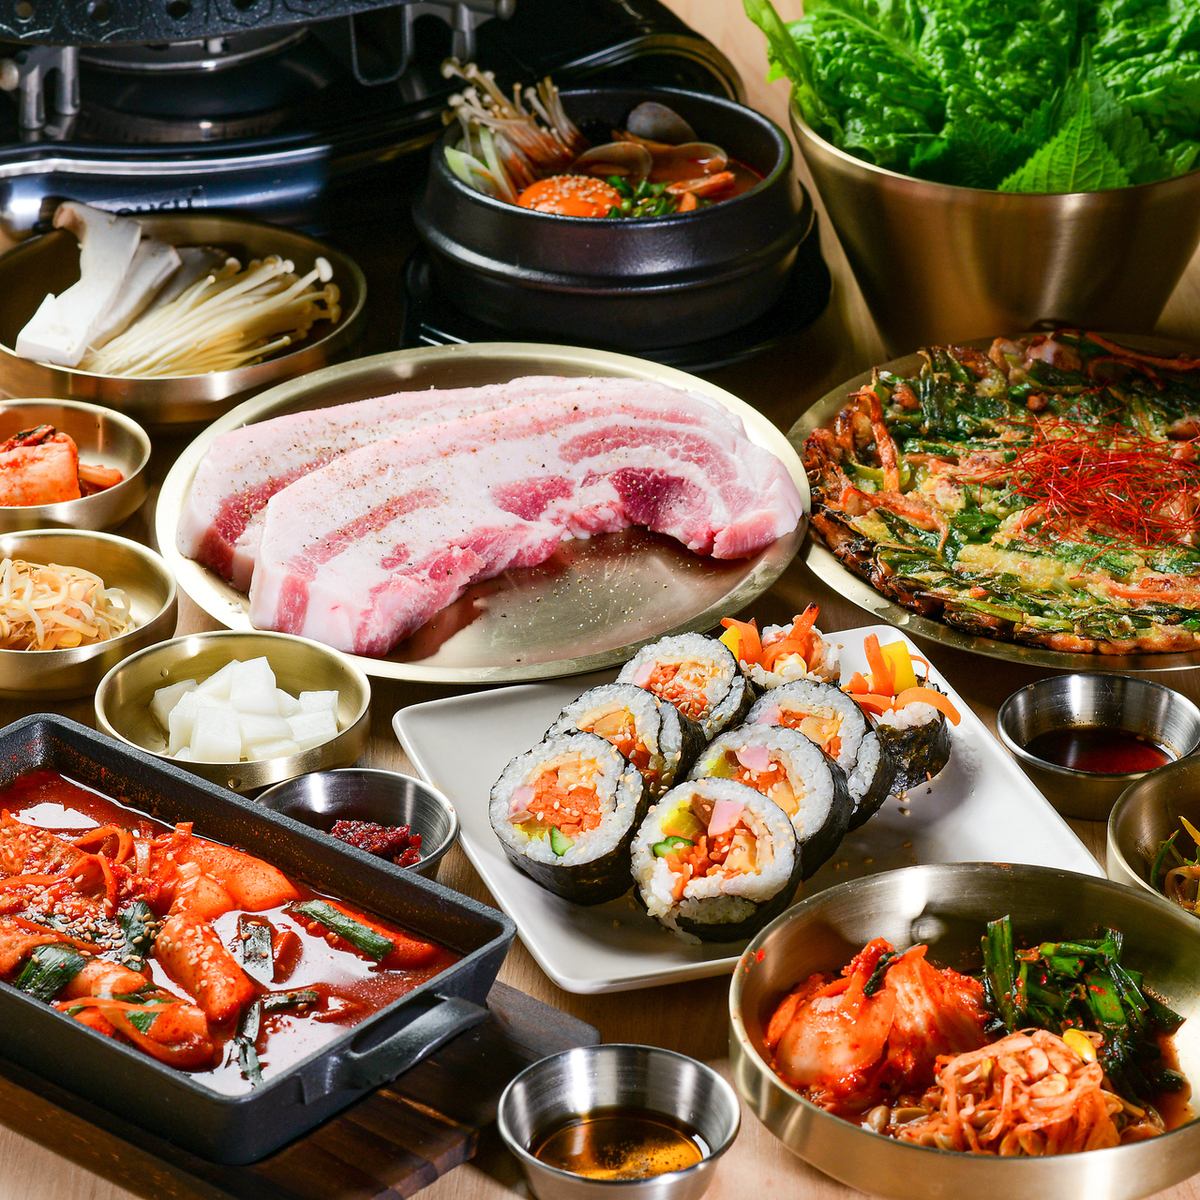 차분한 공간에서 풍부한 한국 요리를 즐길 수 있다! 부부, 가족 등으로 꼭 와 주세요!